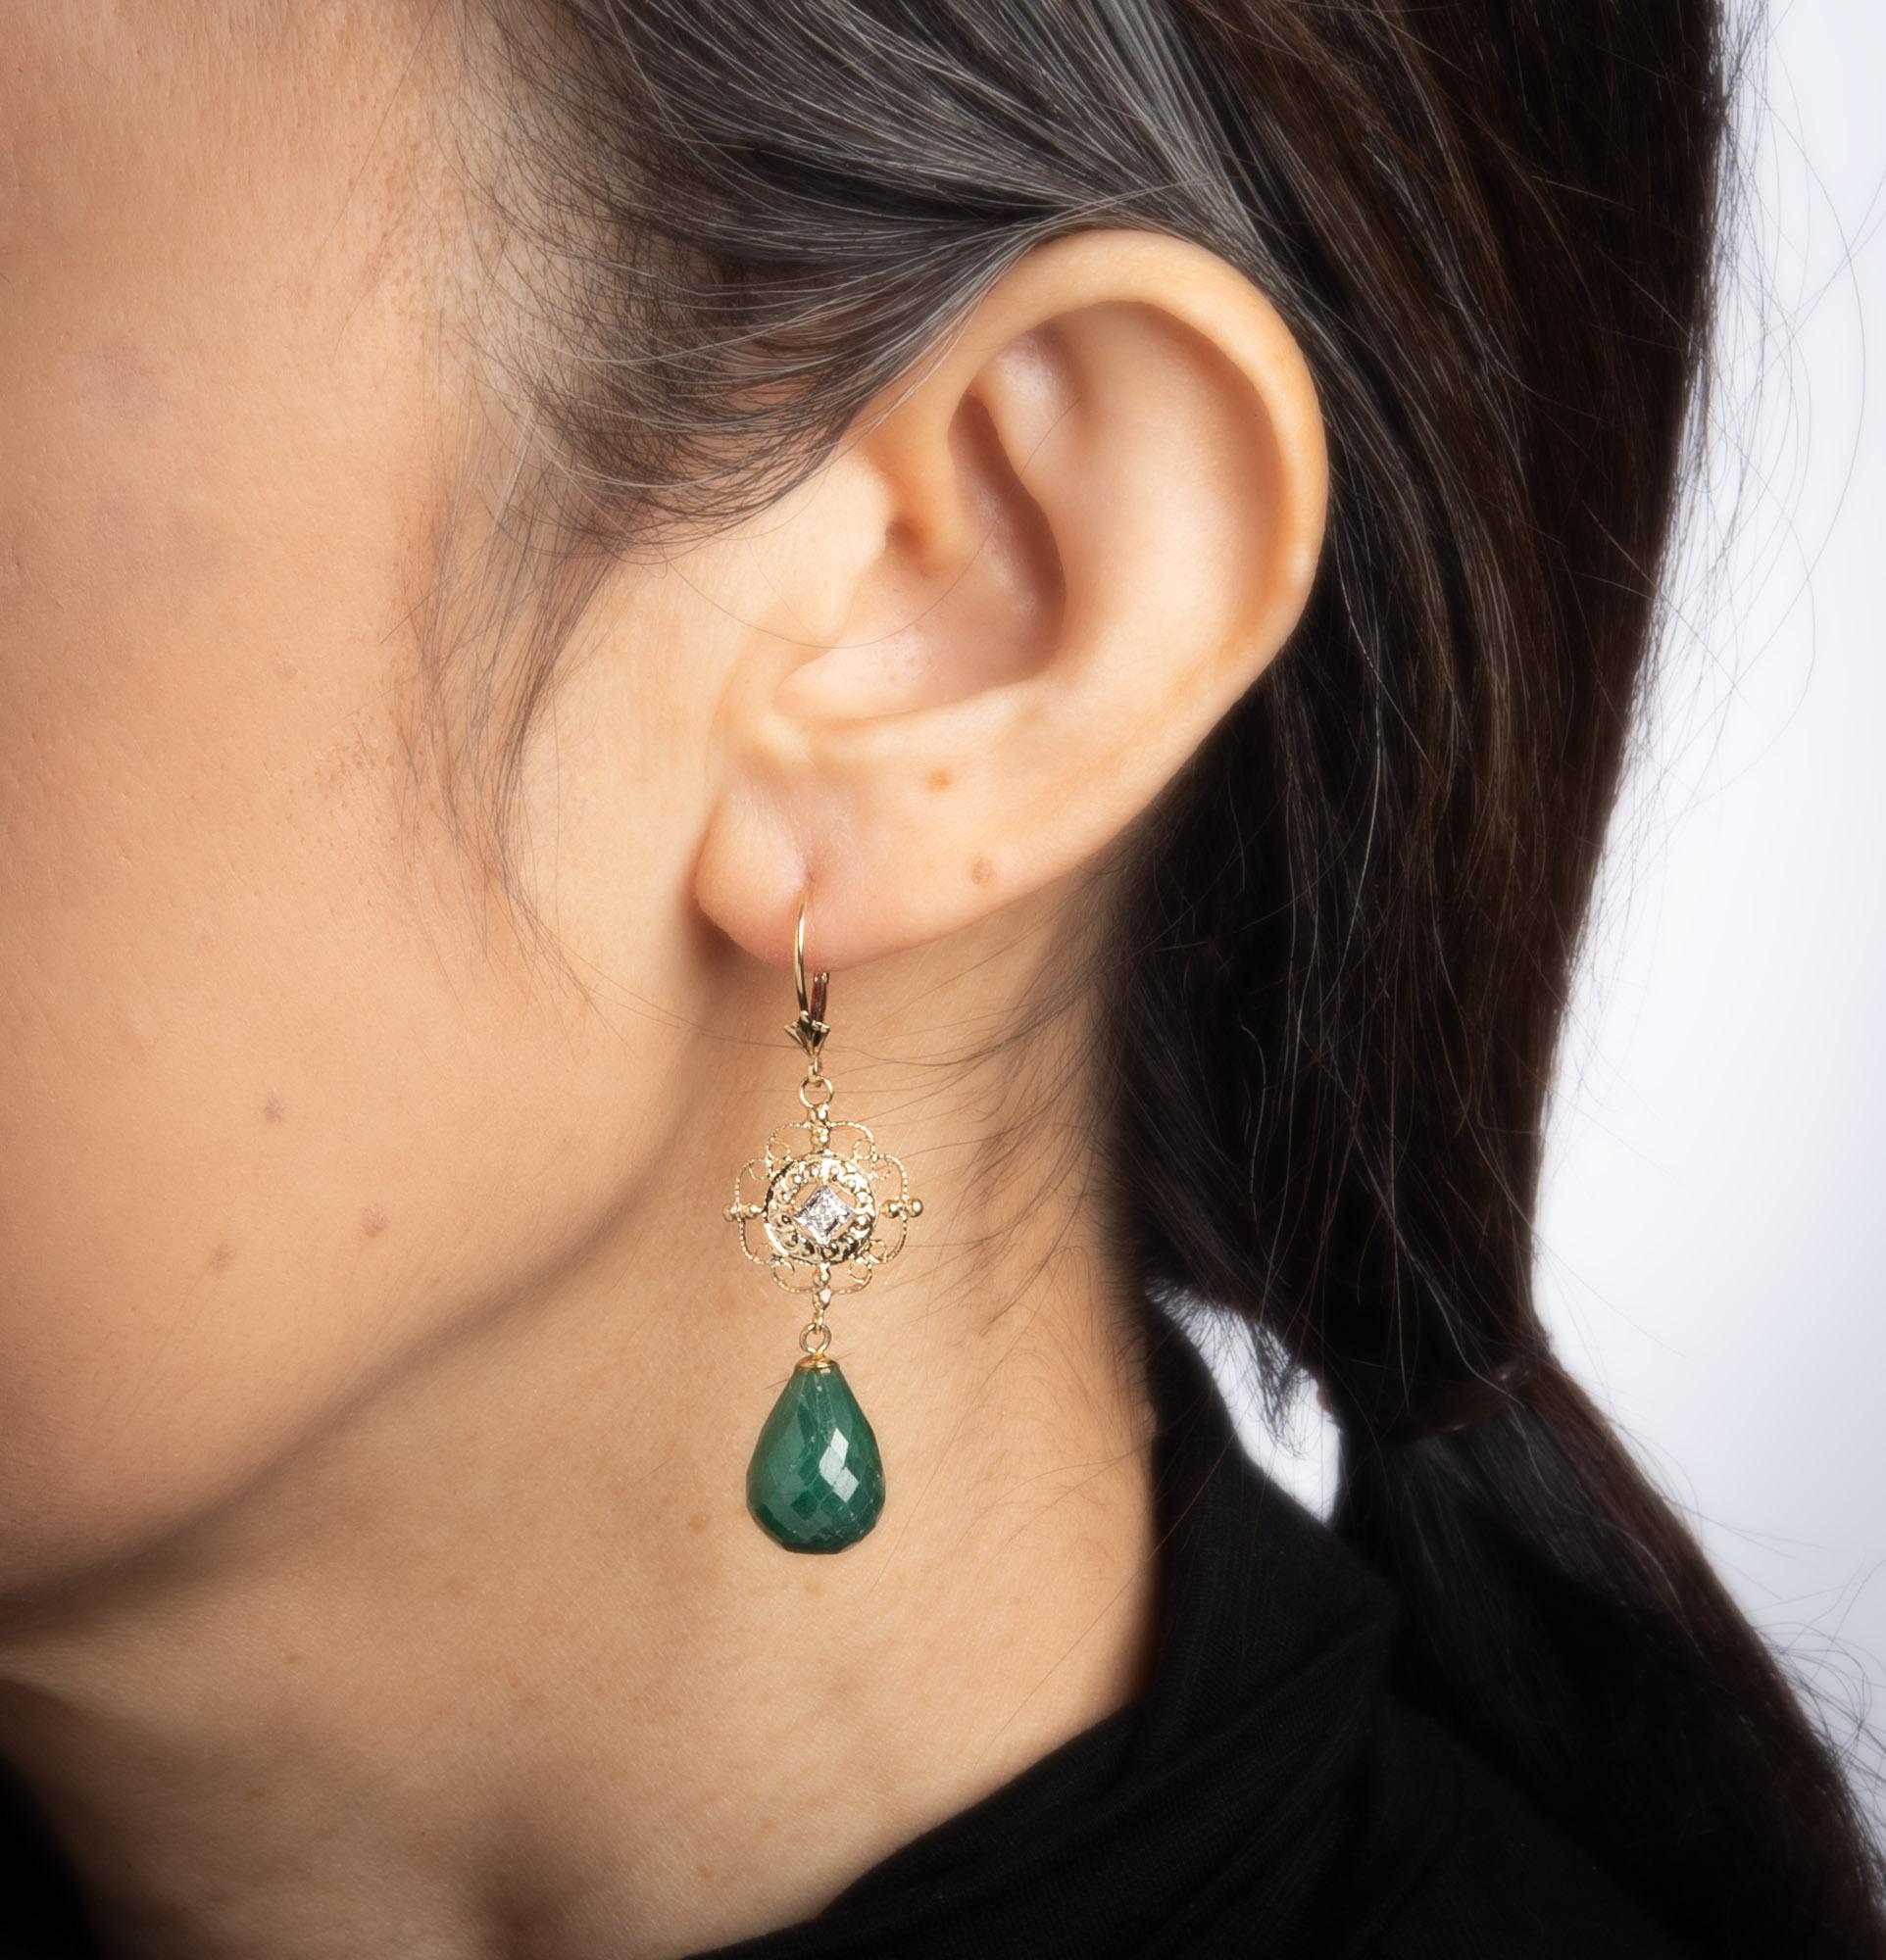 Modern Briolette Emerald Diamond Earrings Vintage 14k Yellow Gold Drops Estate Jewelry